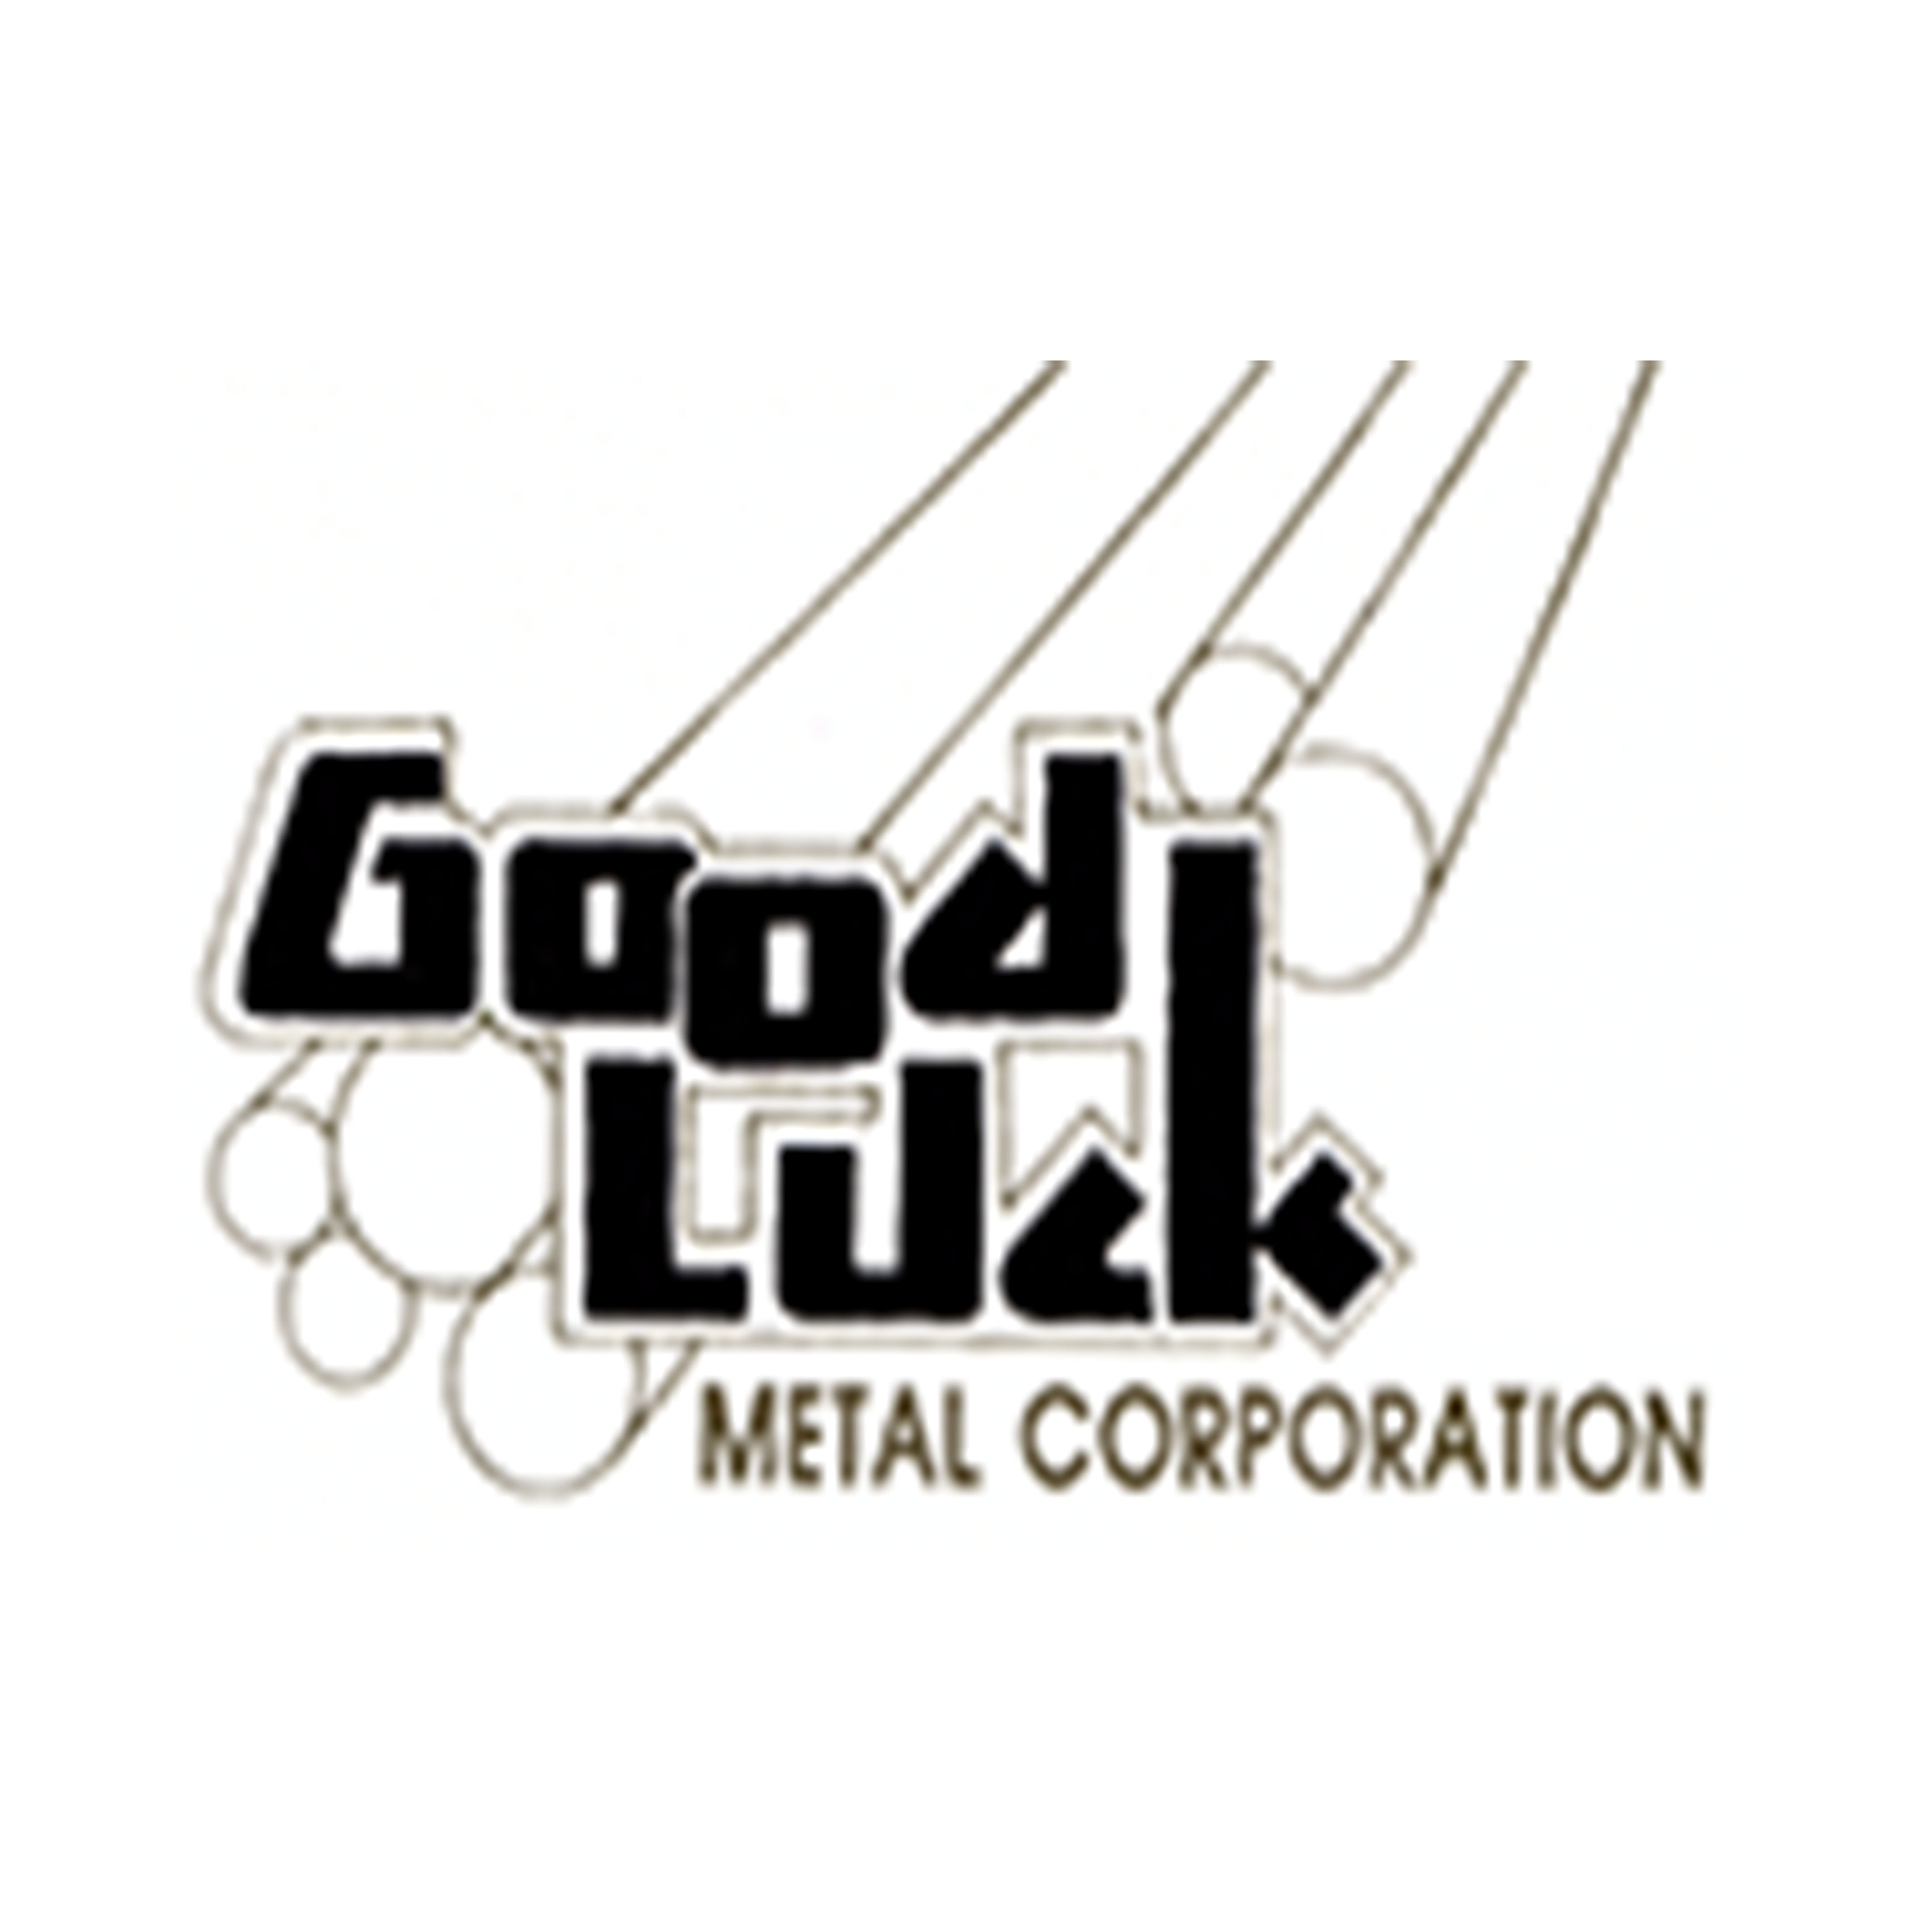 Goodluck Metal Corporation